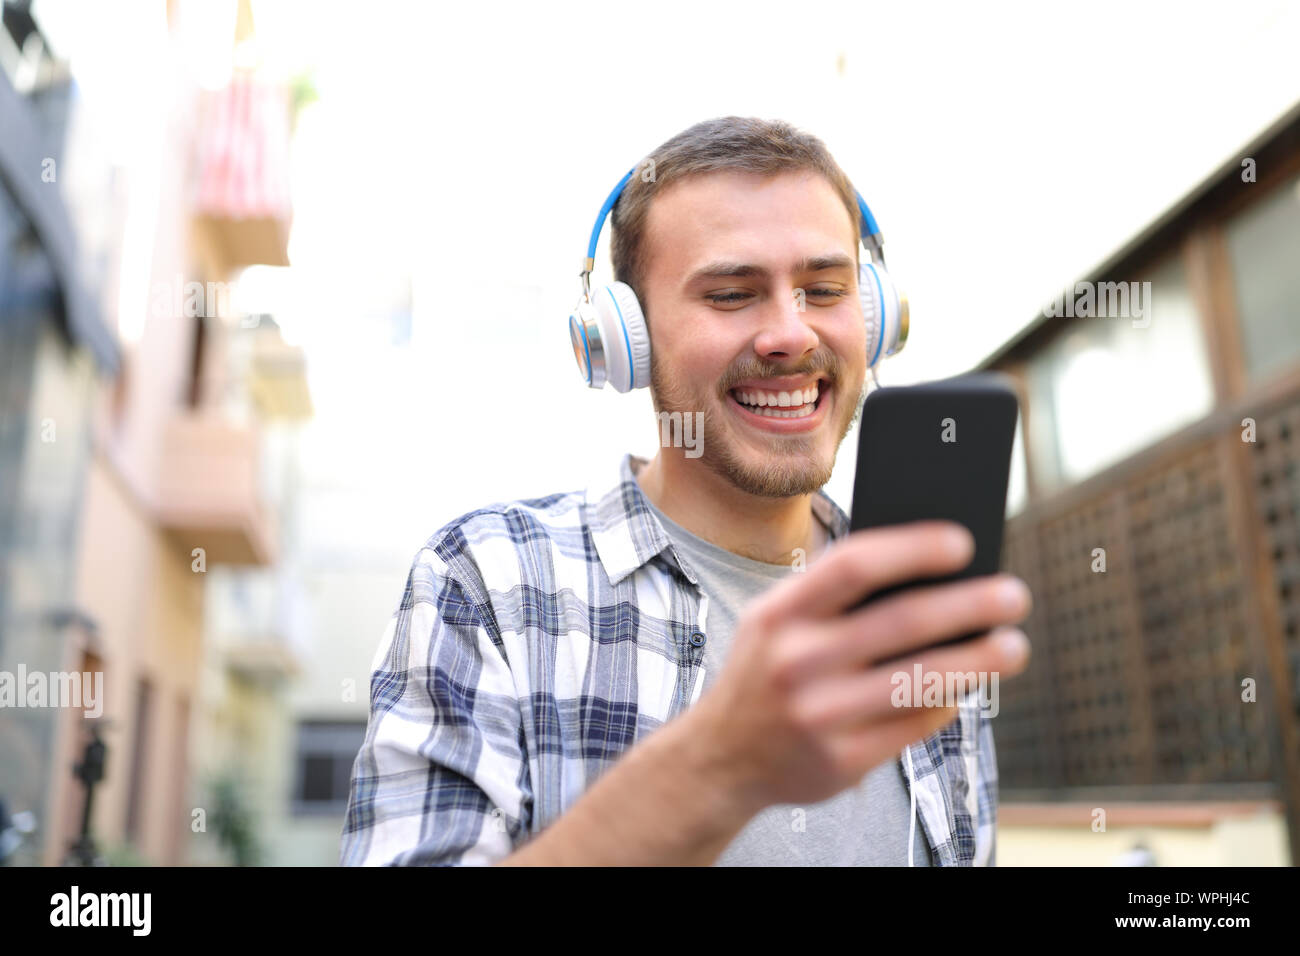 Glückliche Menschen Ansehen und Anhören von musinc von Smart Phone zu Fuß auf der Straße Stockfoto